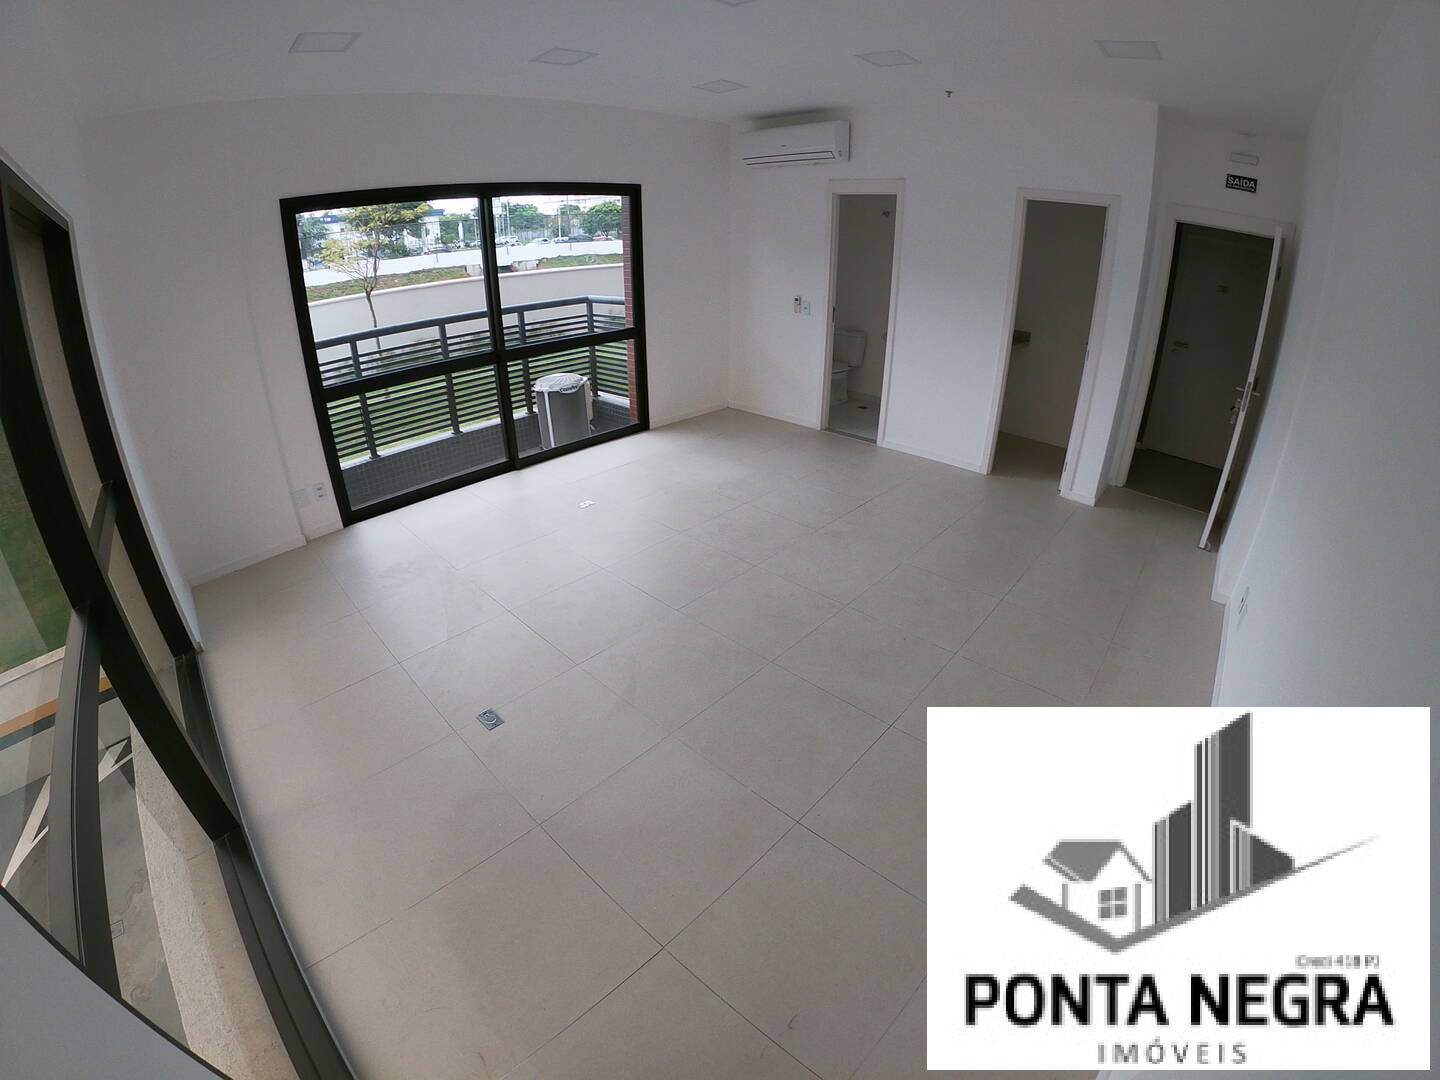 Sala em Ponta Negra, Manaus/AM de 36m² à venda por R$ 429.000,00